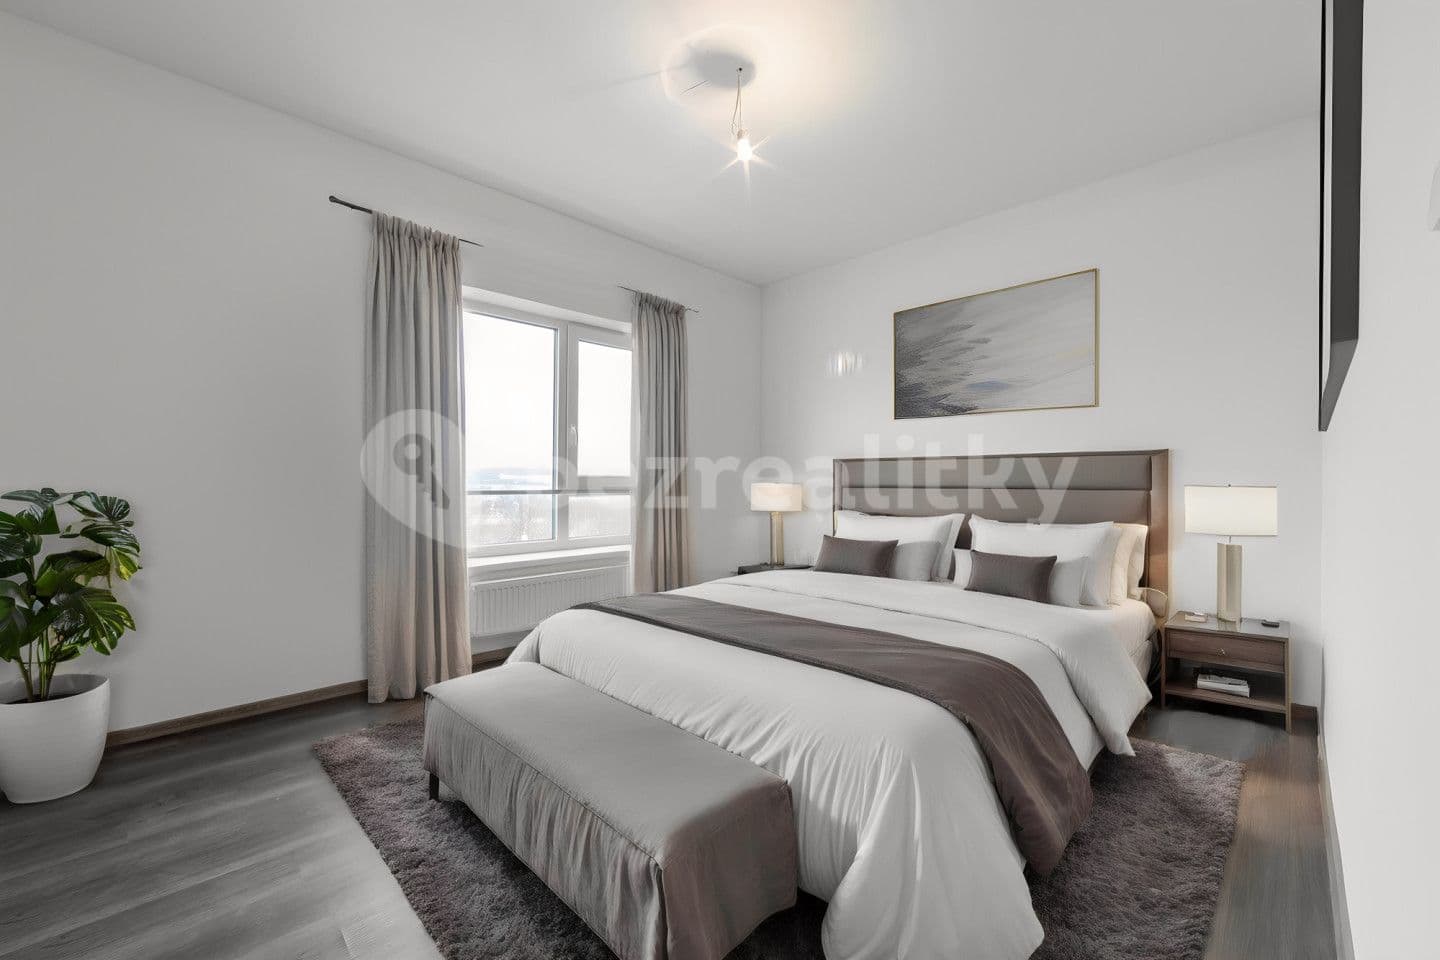 2 bedroom with open-plan kitchen flat for sale, 83 m², Dubová, Karlovy Vary, Karlovarský Region